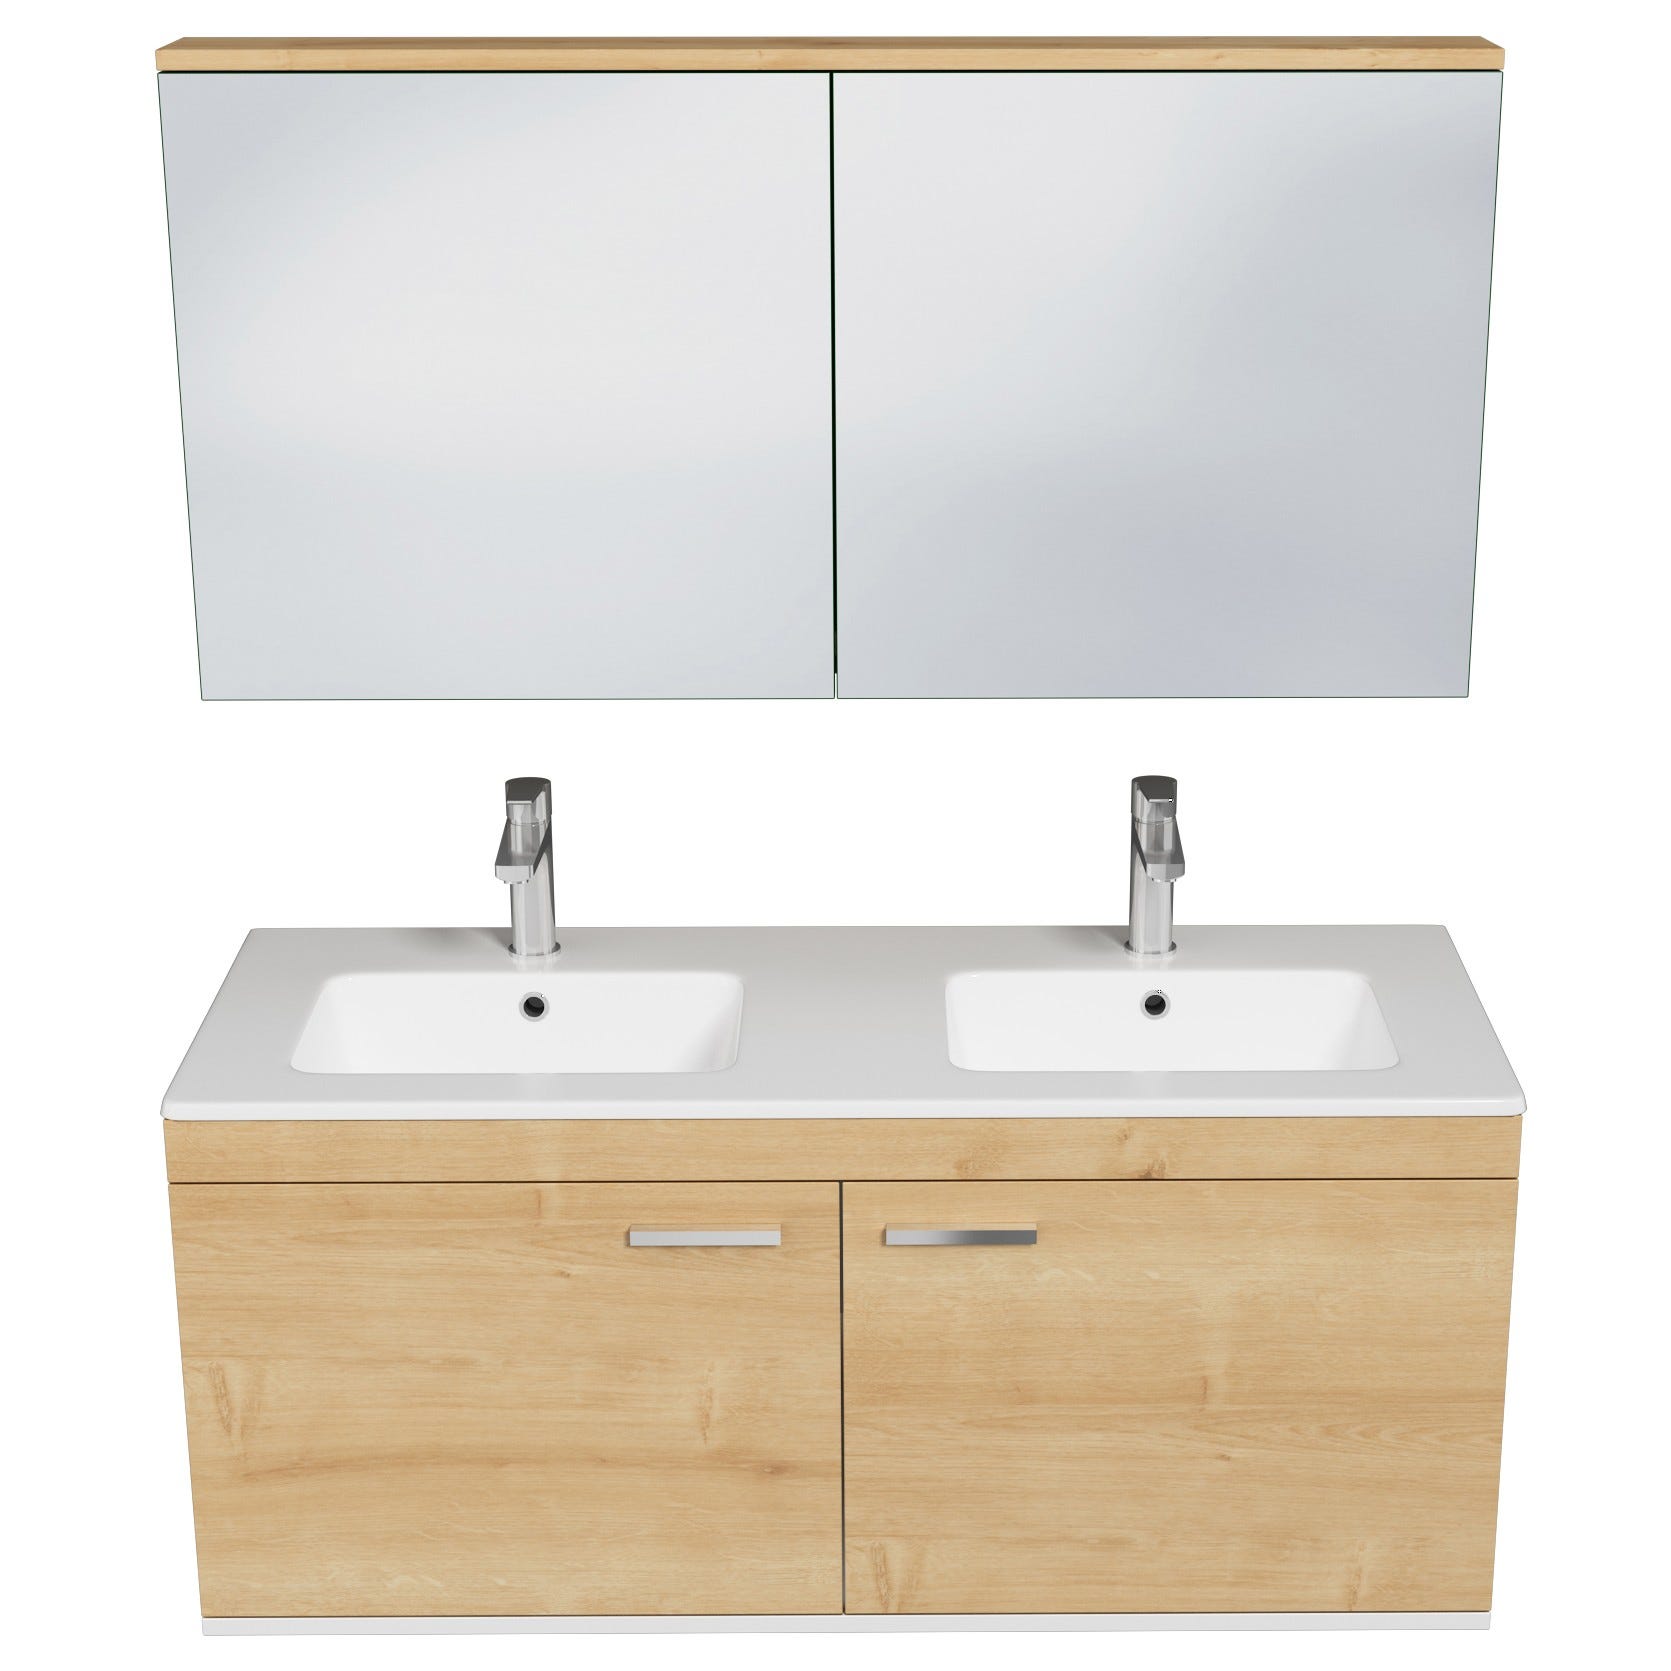 RUBITE Meuble salle de bain double vasque 2 portes chêne clair largeur 120 cm + miroir armoire 3